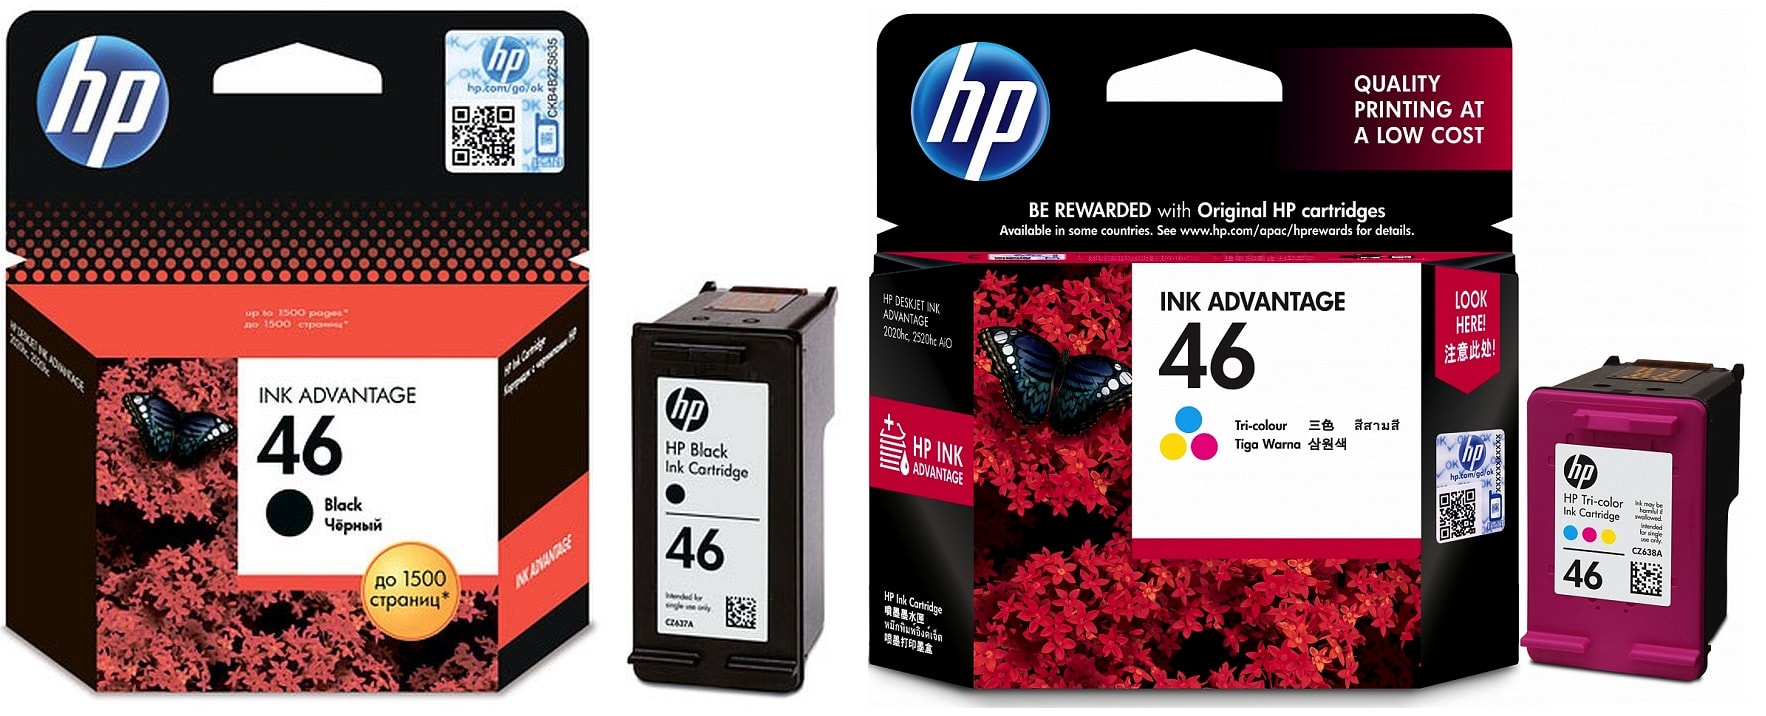 Картриджи hp 652 black hp 652 color для HP DJ Ink Advantage 2020. Купить комплект оригинальных картриджей.